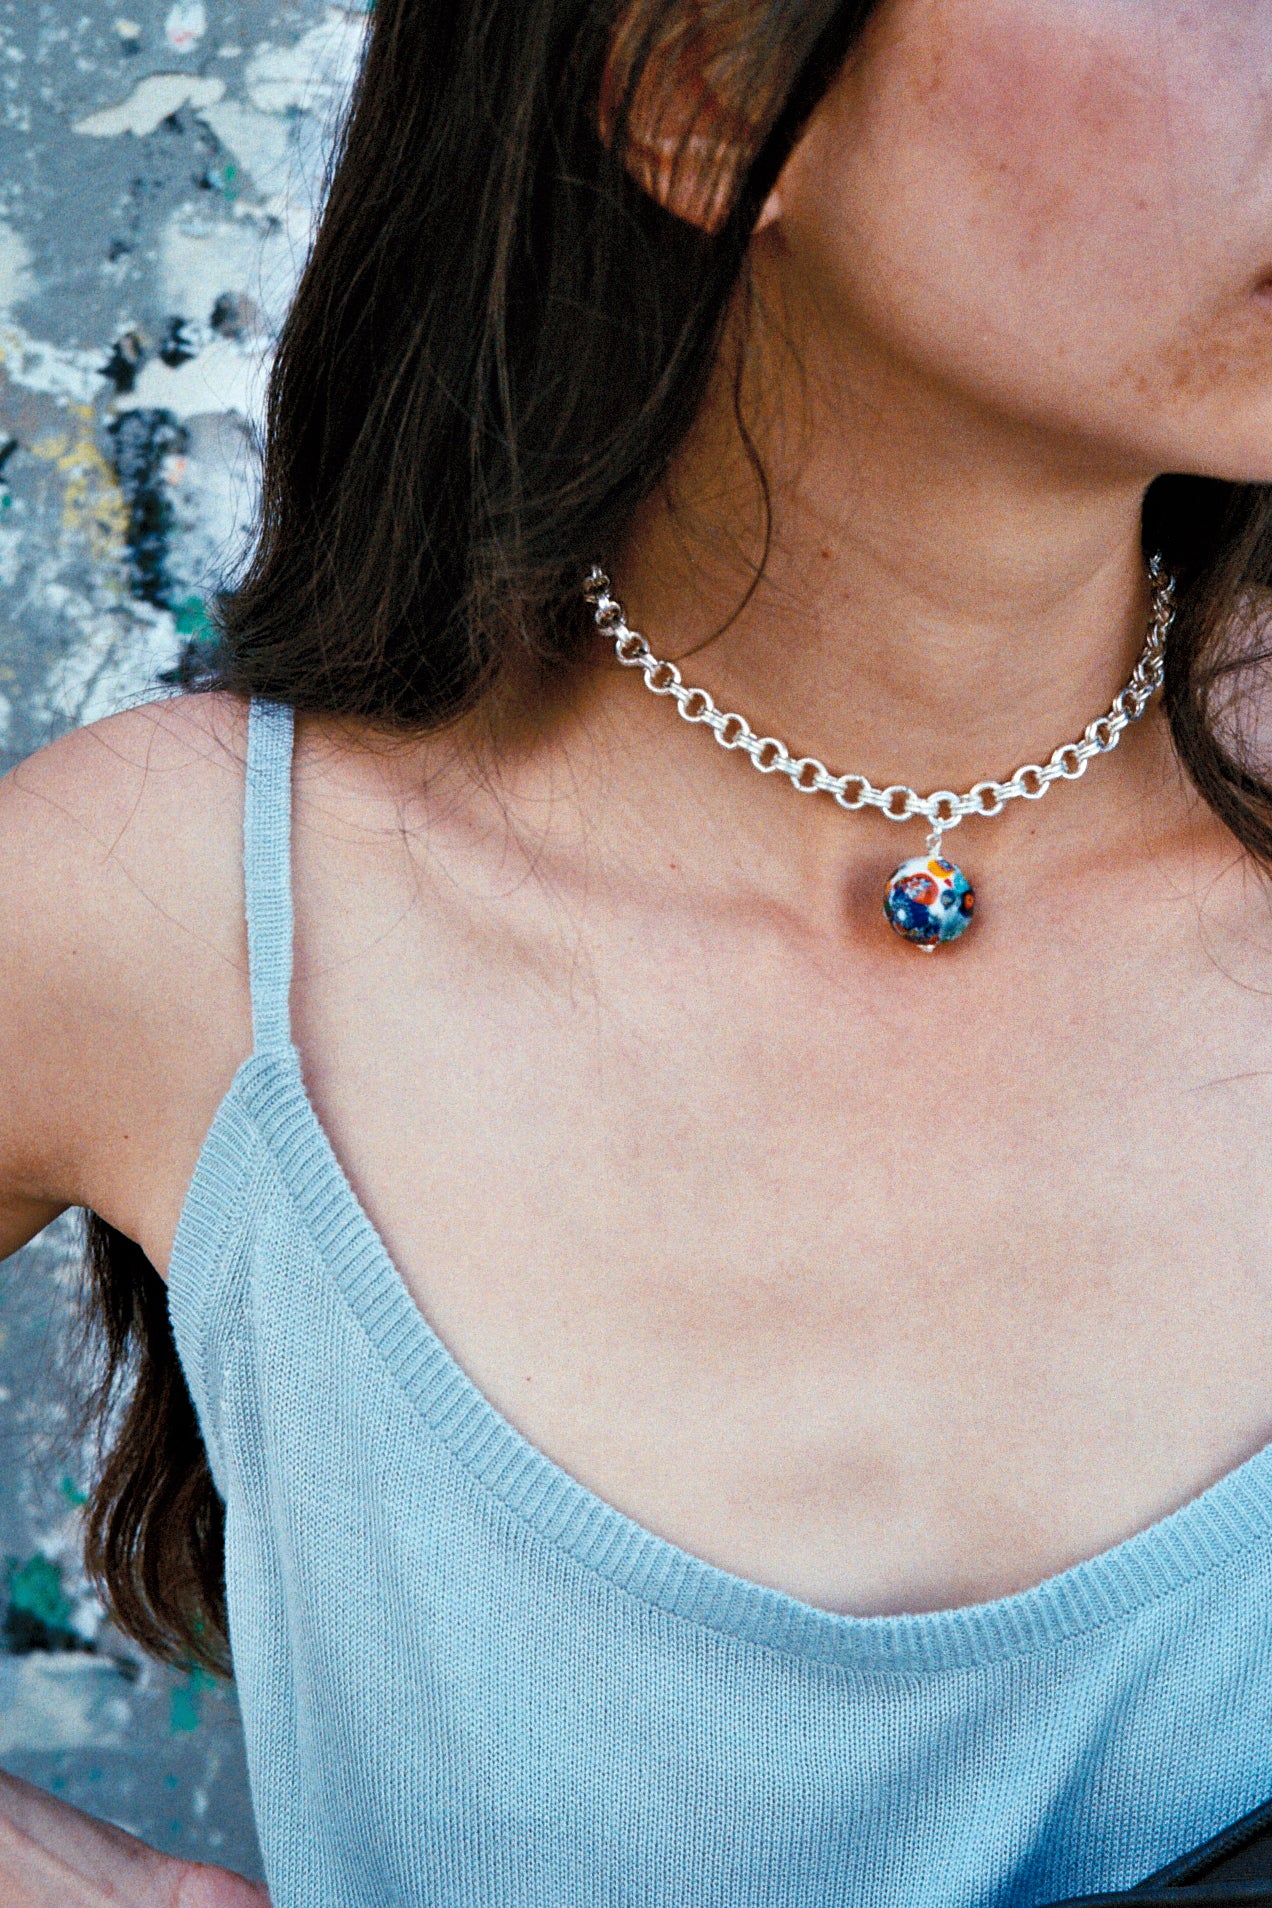 Millefiori necklace - Multi